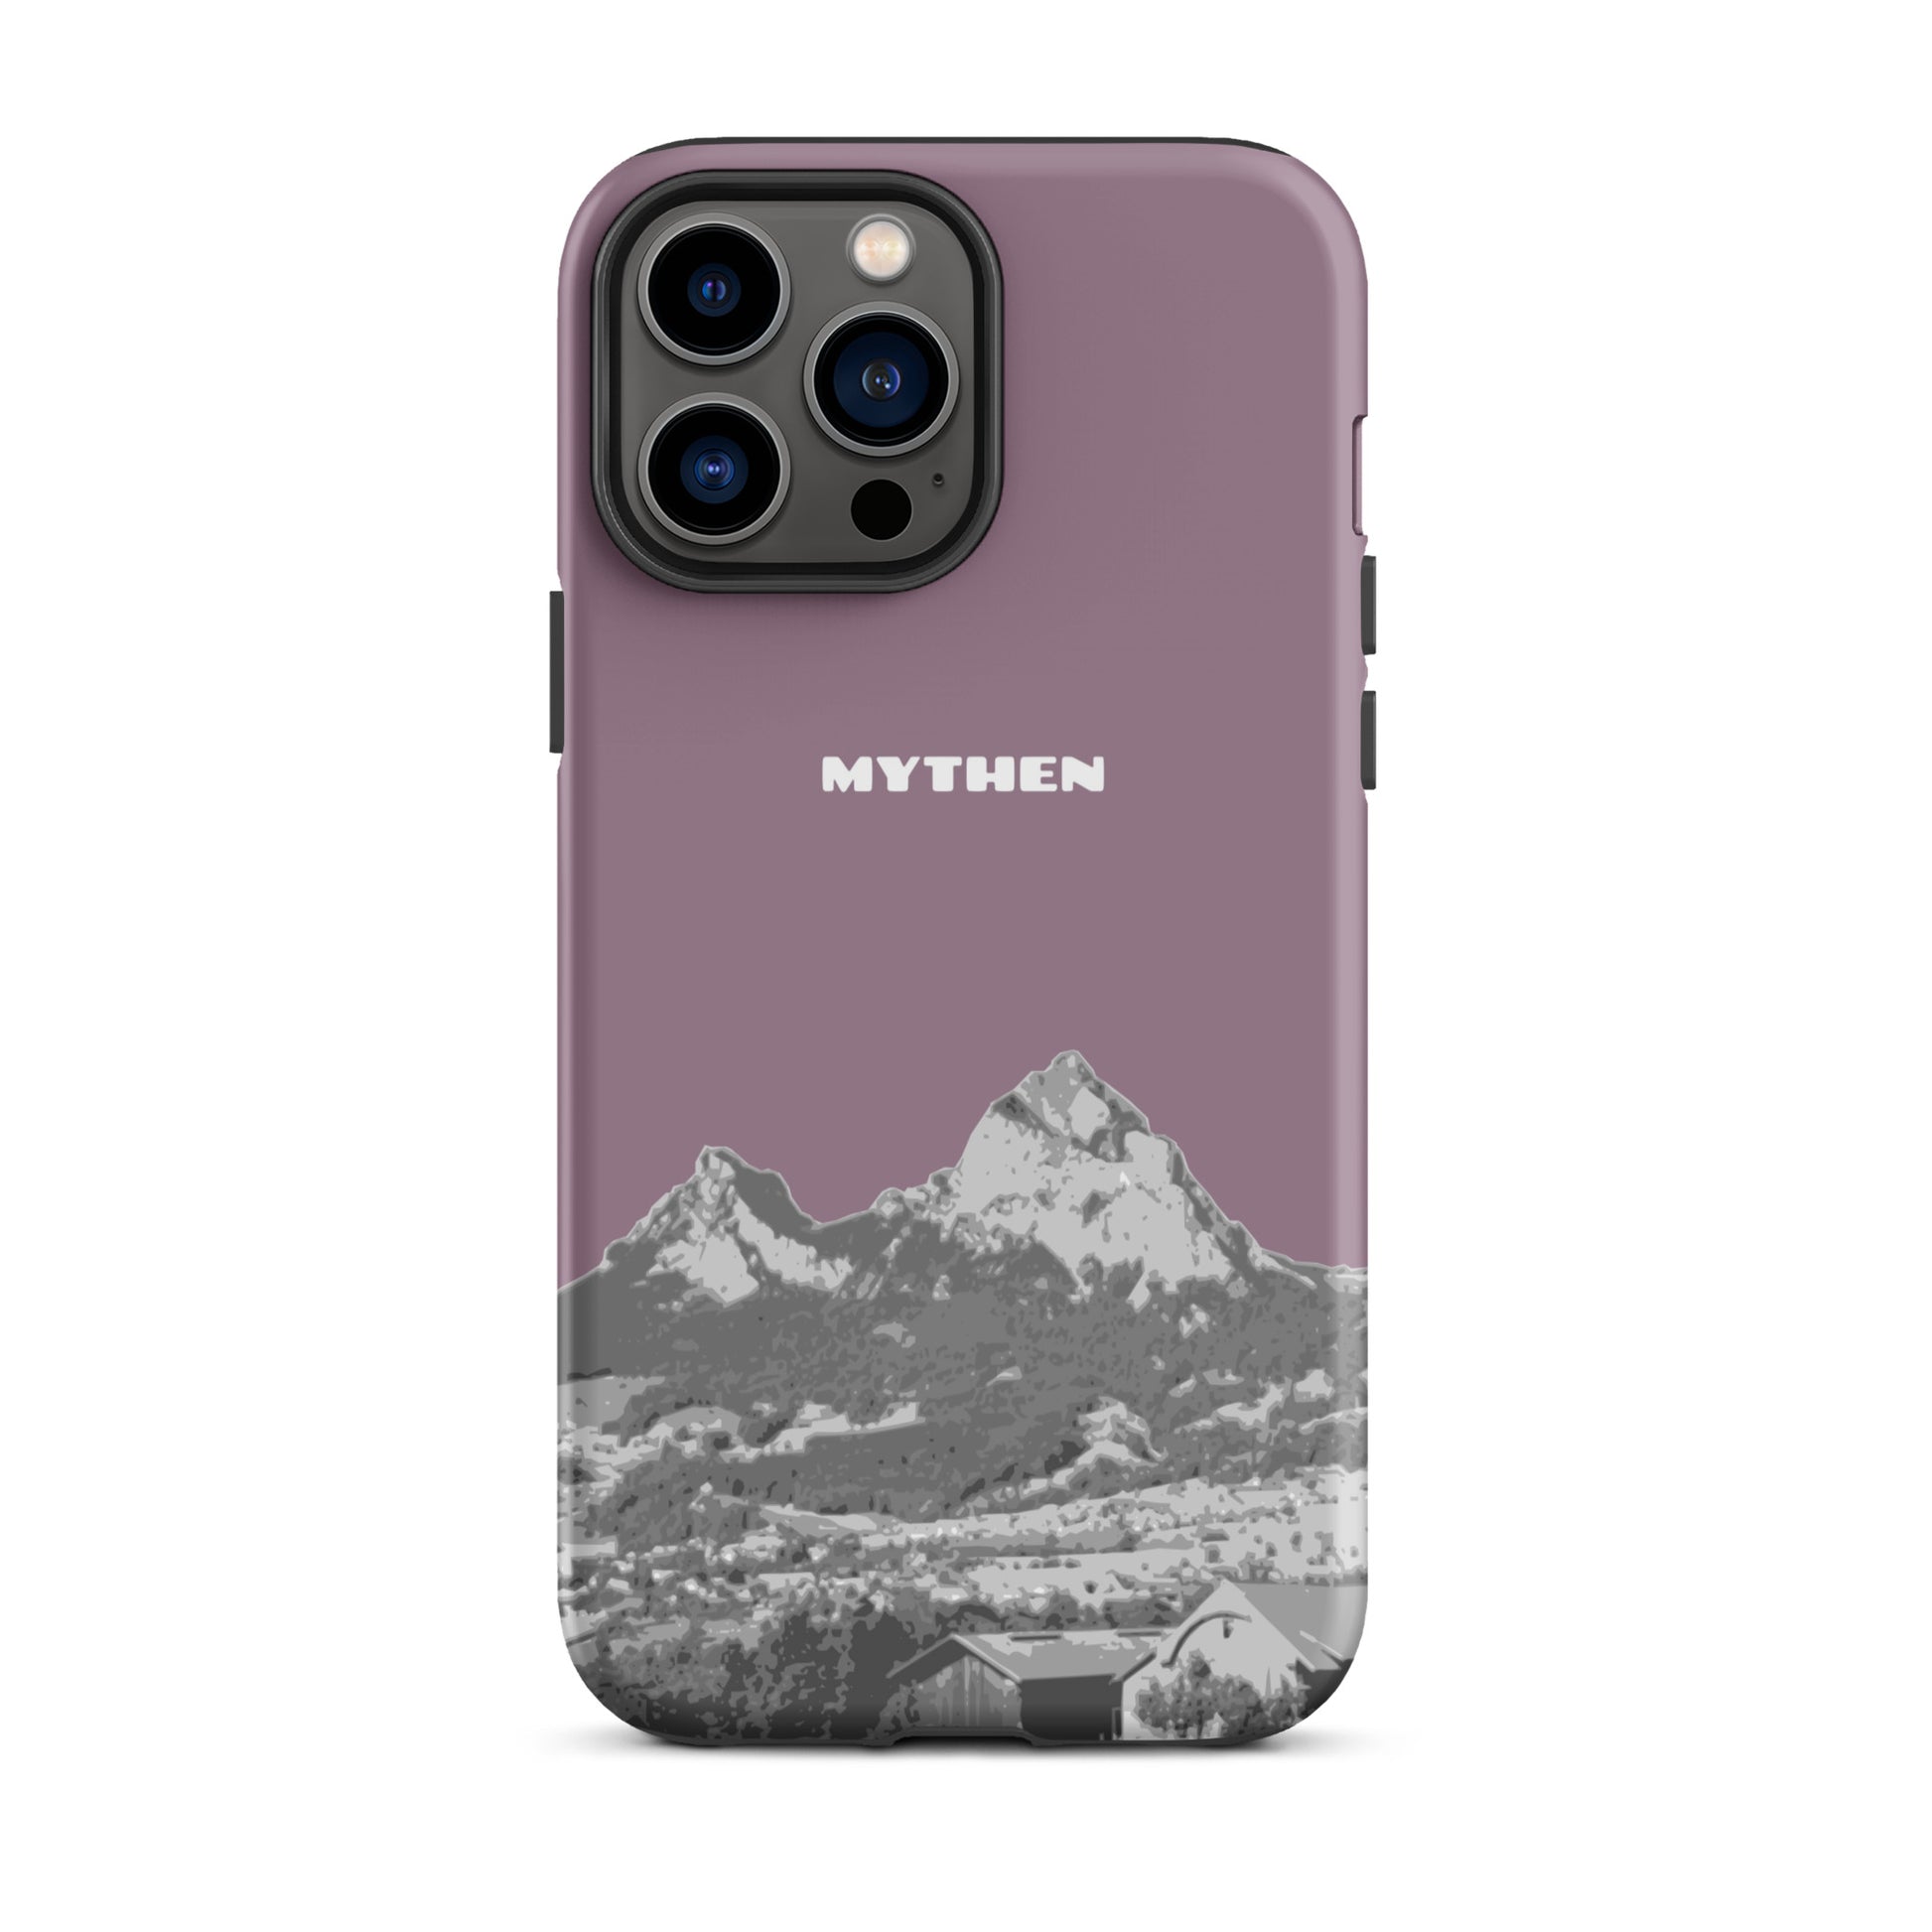 Hülle für das iPhone 13 Pro Max von Apple in der Farbe Pastellviolett, die den Grossen Mythen und den Kleinen Mythen bei Schwyz zeigt. 